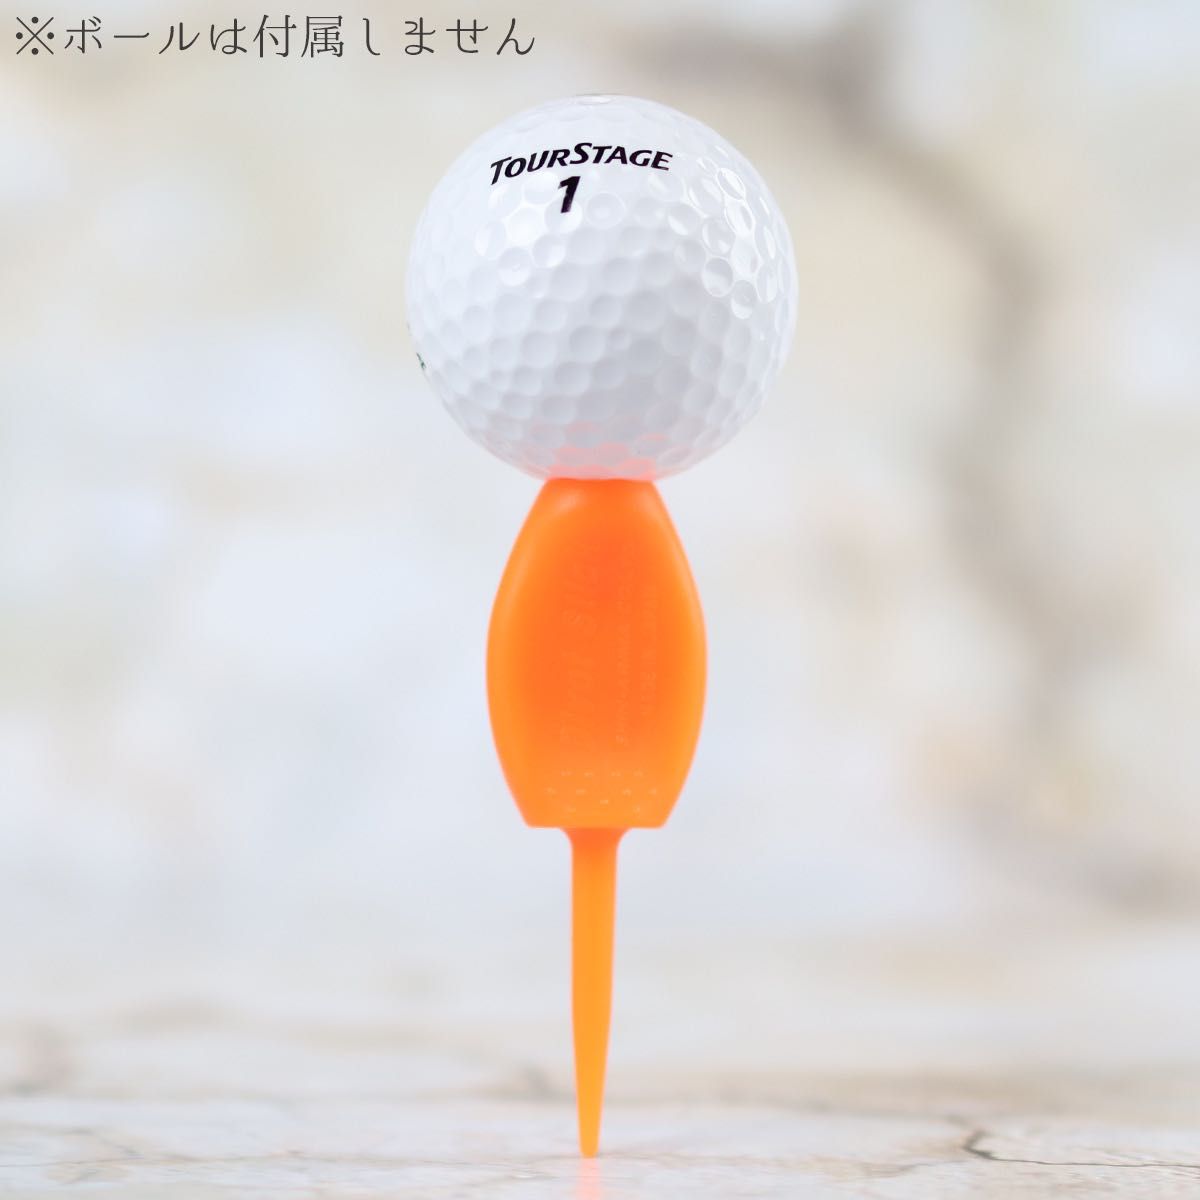 8本セット 日本製 パリティー 蛍光色 ゴルフボール 跡 ゴルフティー ティーペグ グリーンフォーク ボールマーク b098m